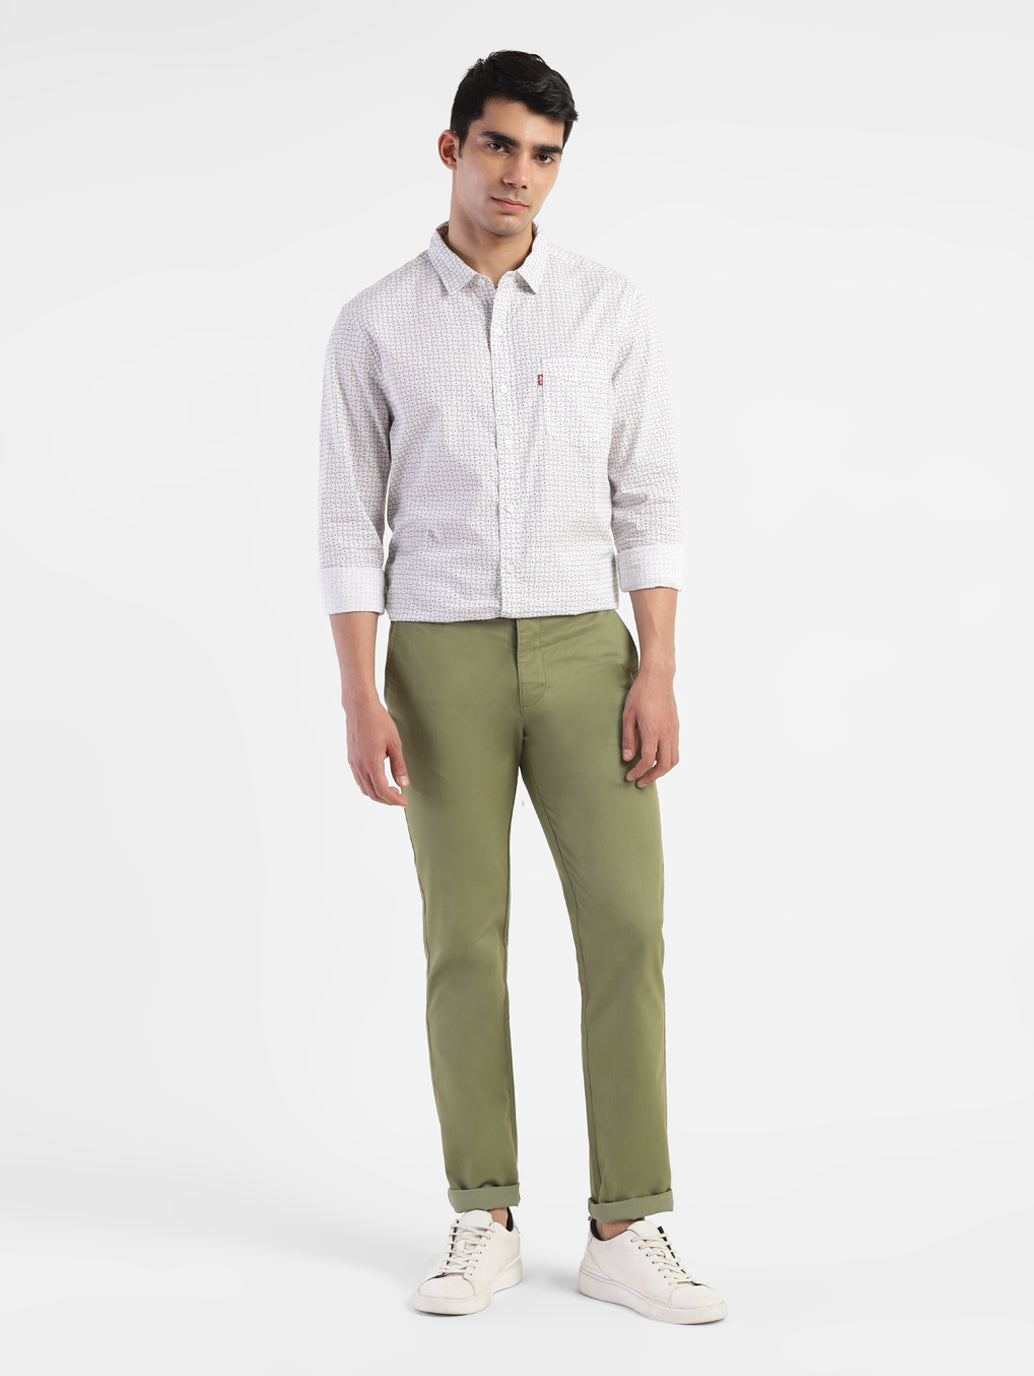 Men's Green Slim Fit Trousers